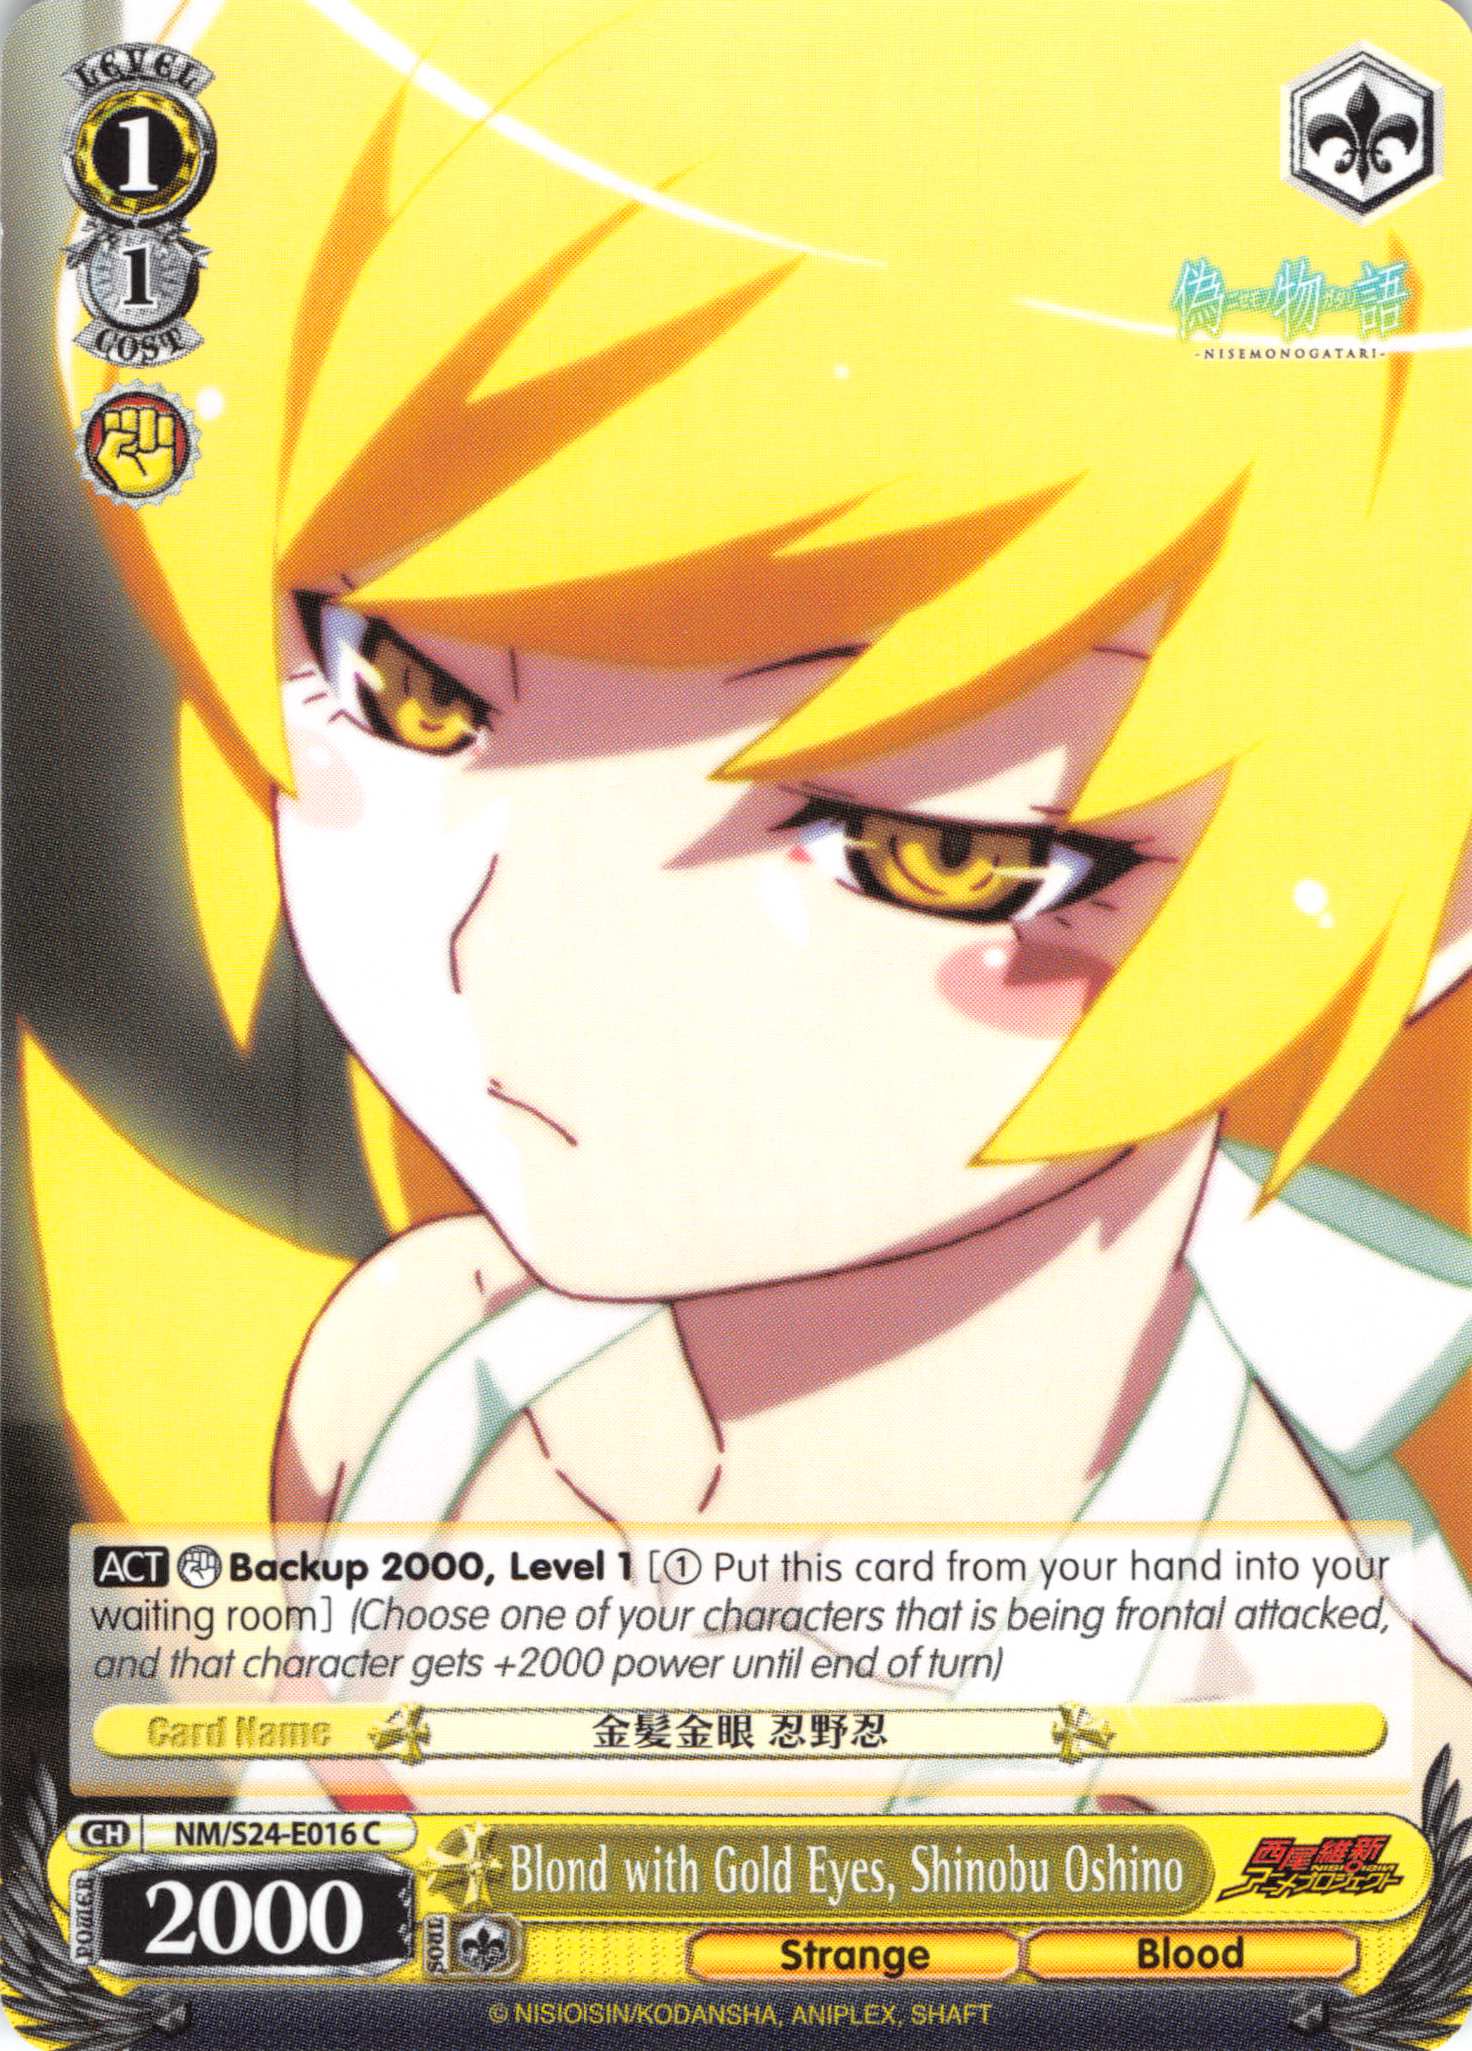 Blond with Gold Eyes, Shinobu Oshino (NM/S24-E016) [NISEMONOGATARI]